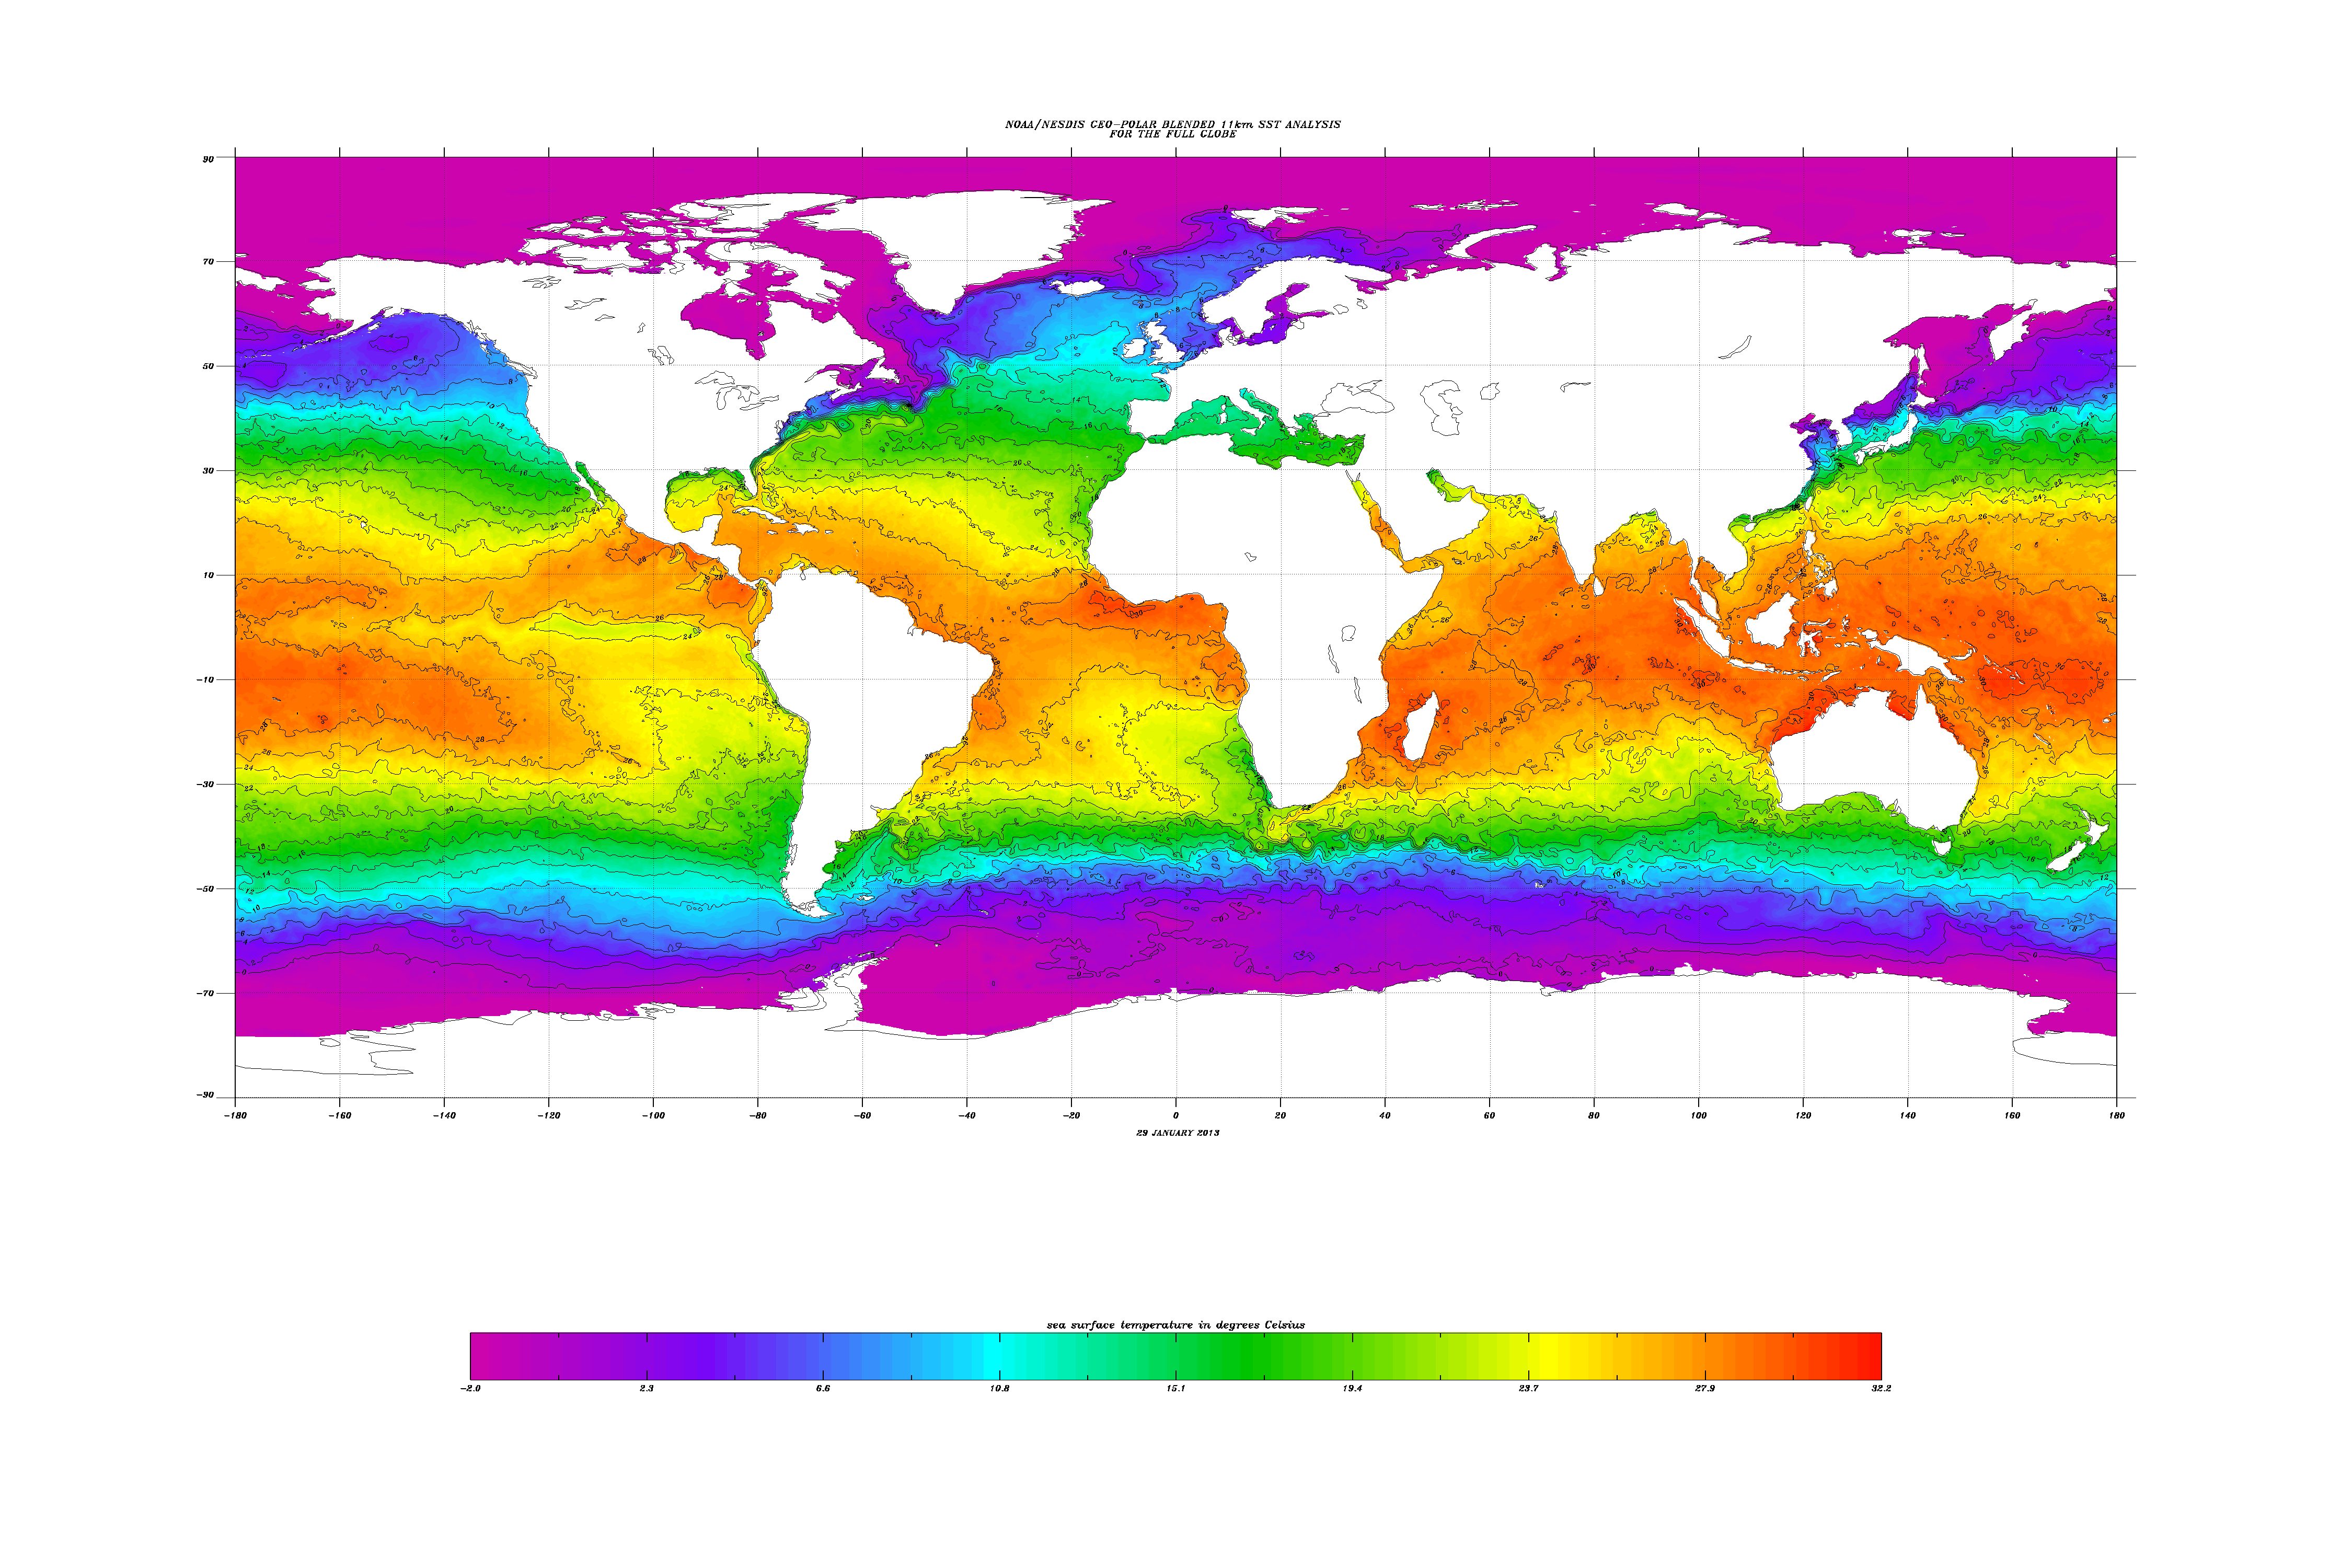 Temperaturas de la superficie oceánica